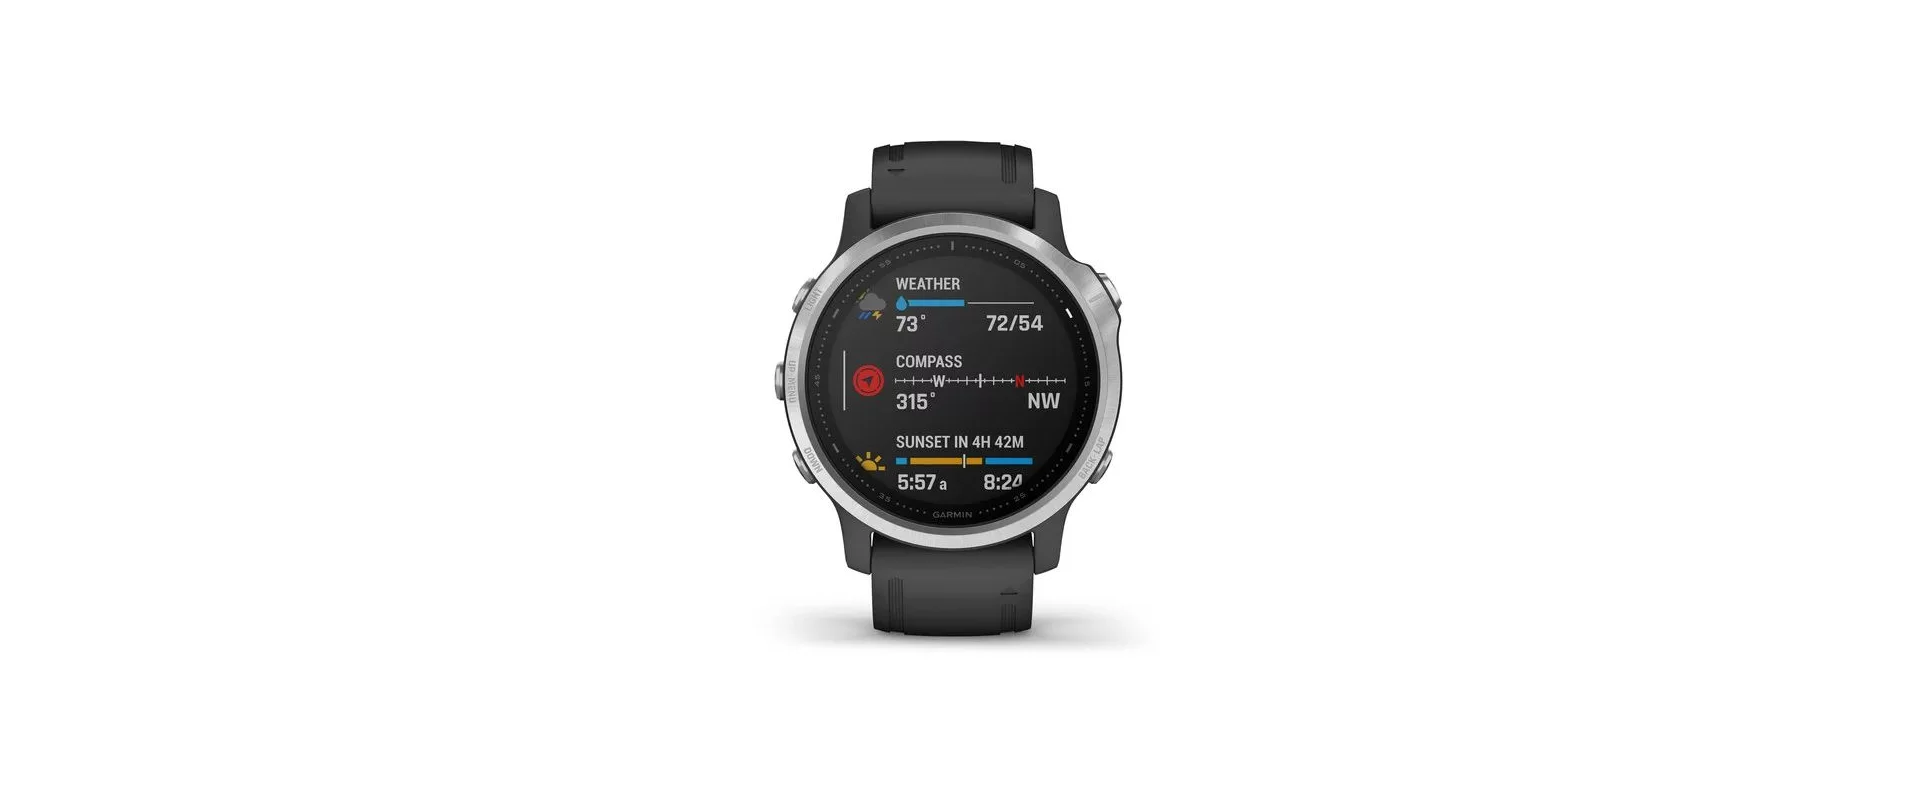 Garmin Fenix 6S / Смарт-часы беговые с GPS, HR и Garmin Pay фото 8